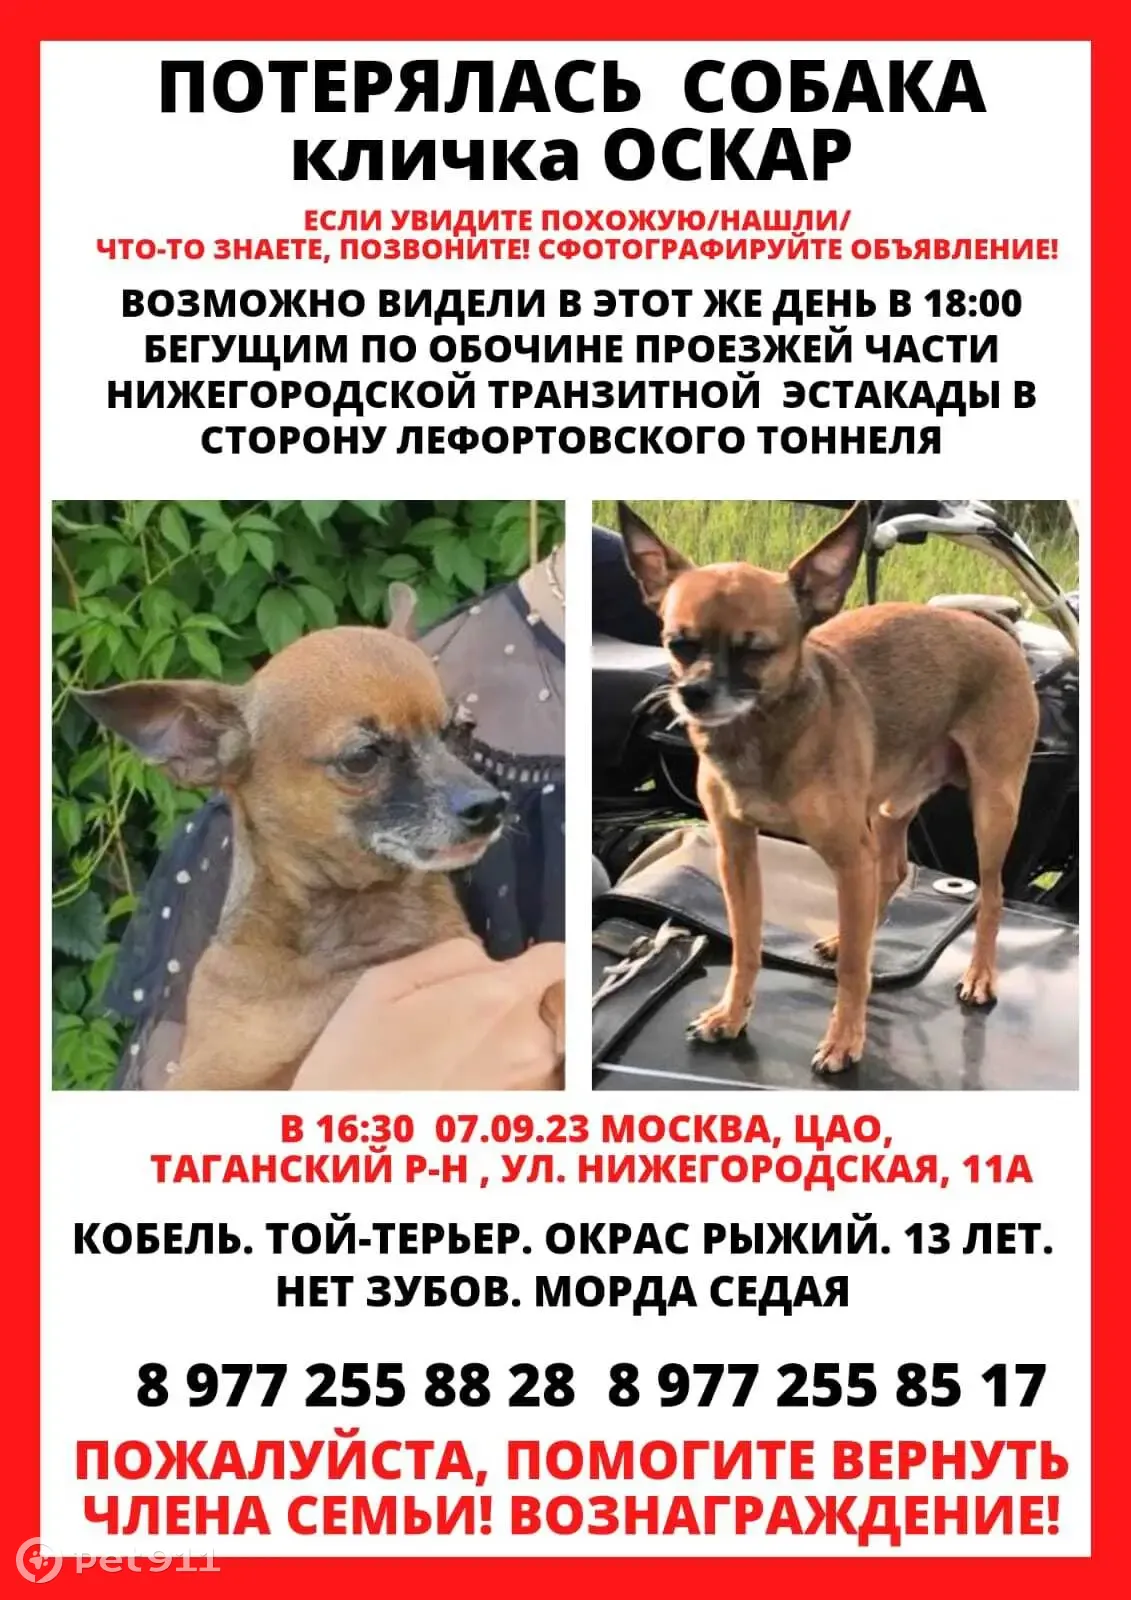 Пропала собака той-терьер, 13 лет, рыжий окрас (Москва) | Pet911.ru